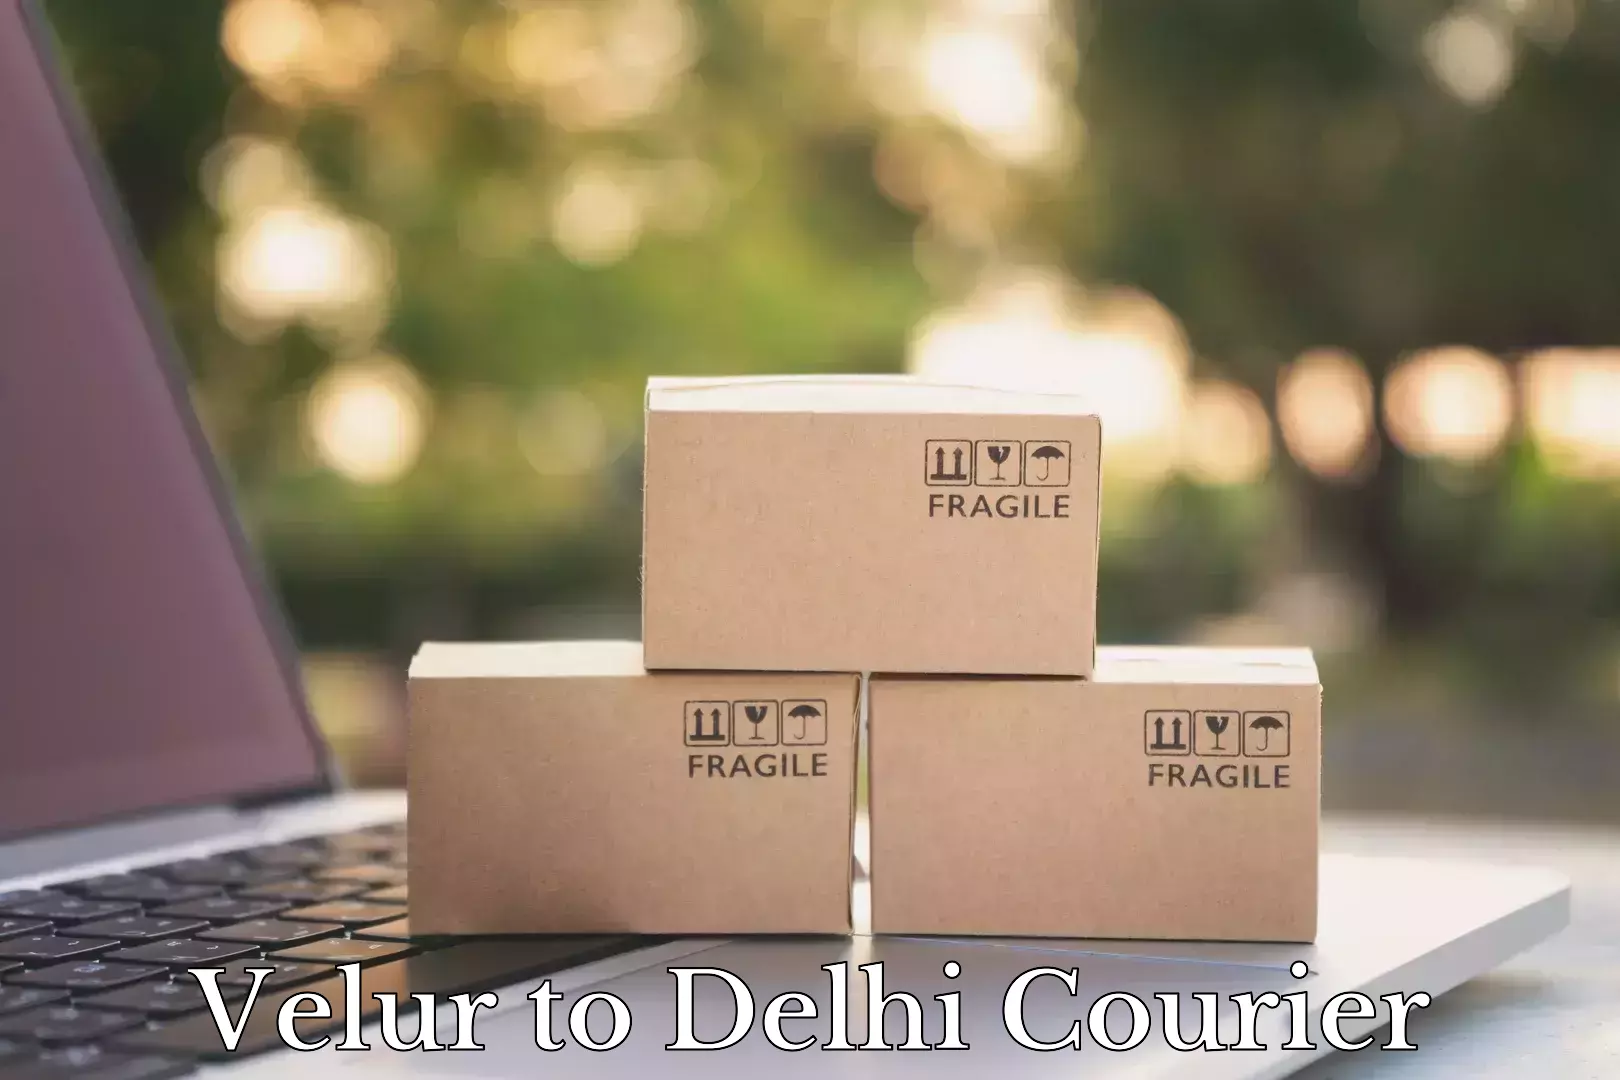 Furniture transport experts Velur to East Delhi